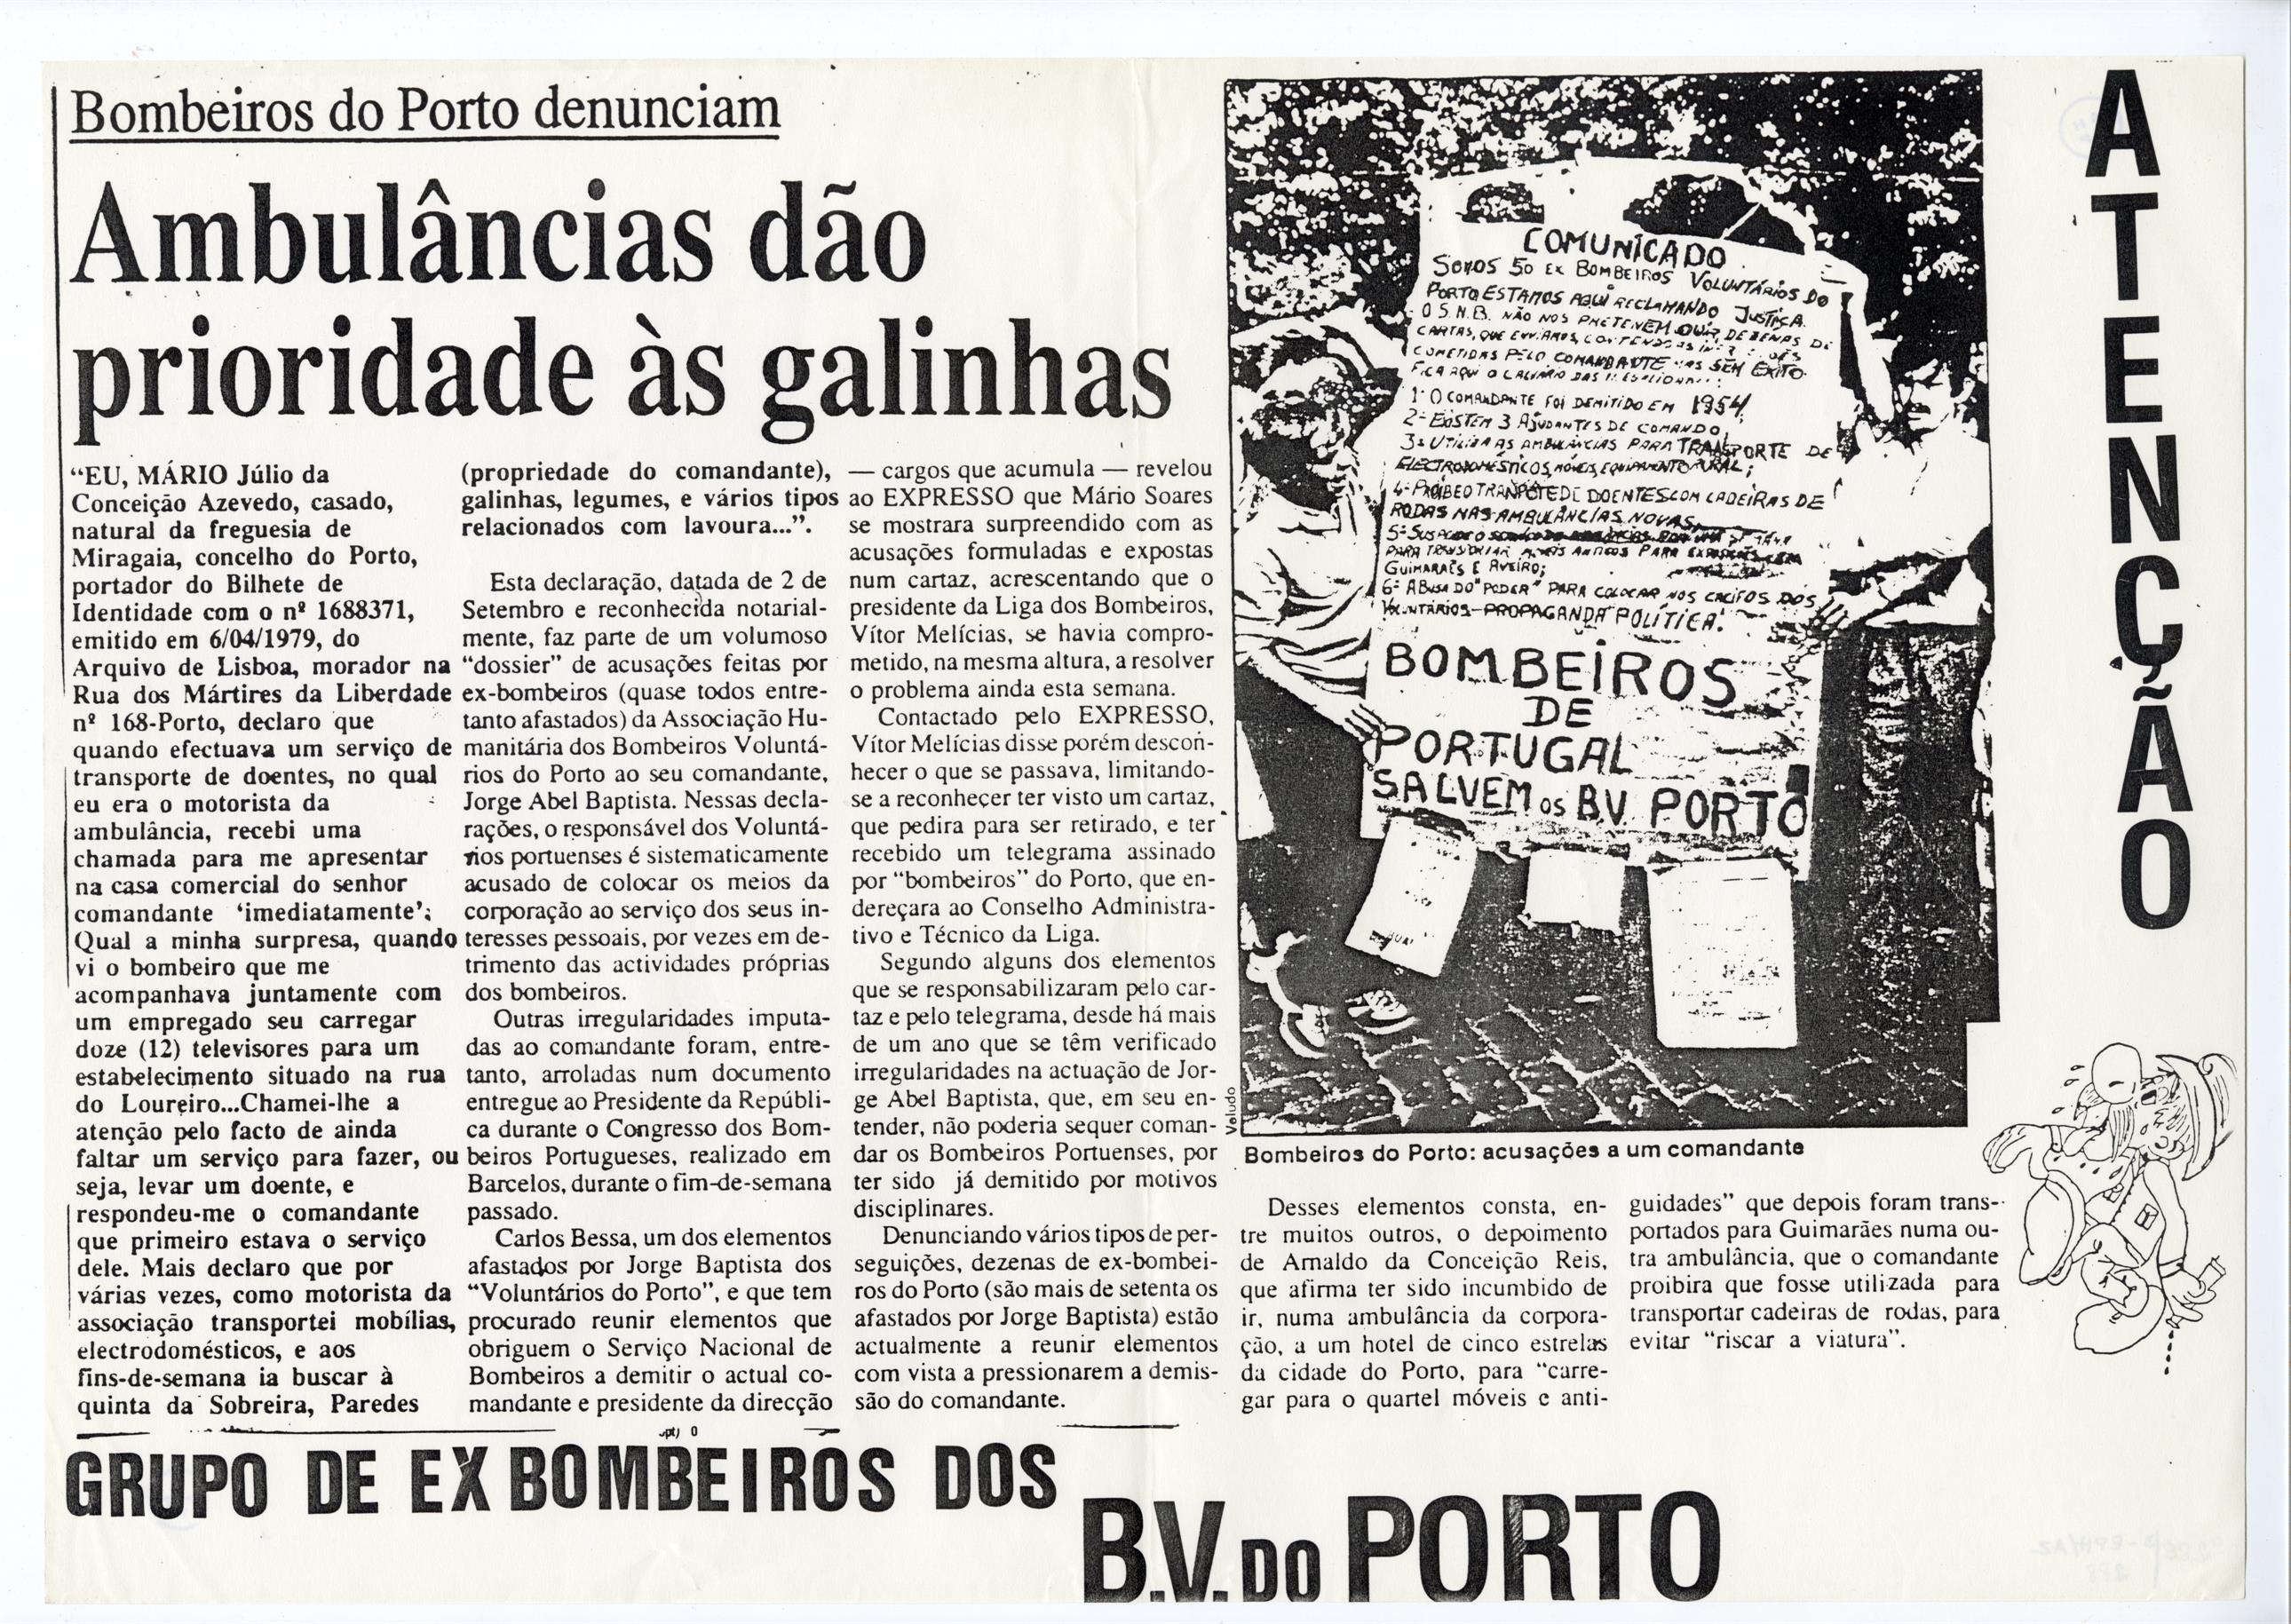 Bombeiros do Porto denunciam : ambulâncias dão prioridade às galinhas